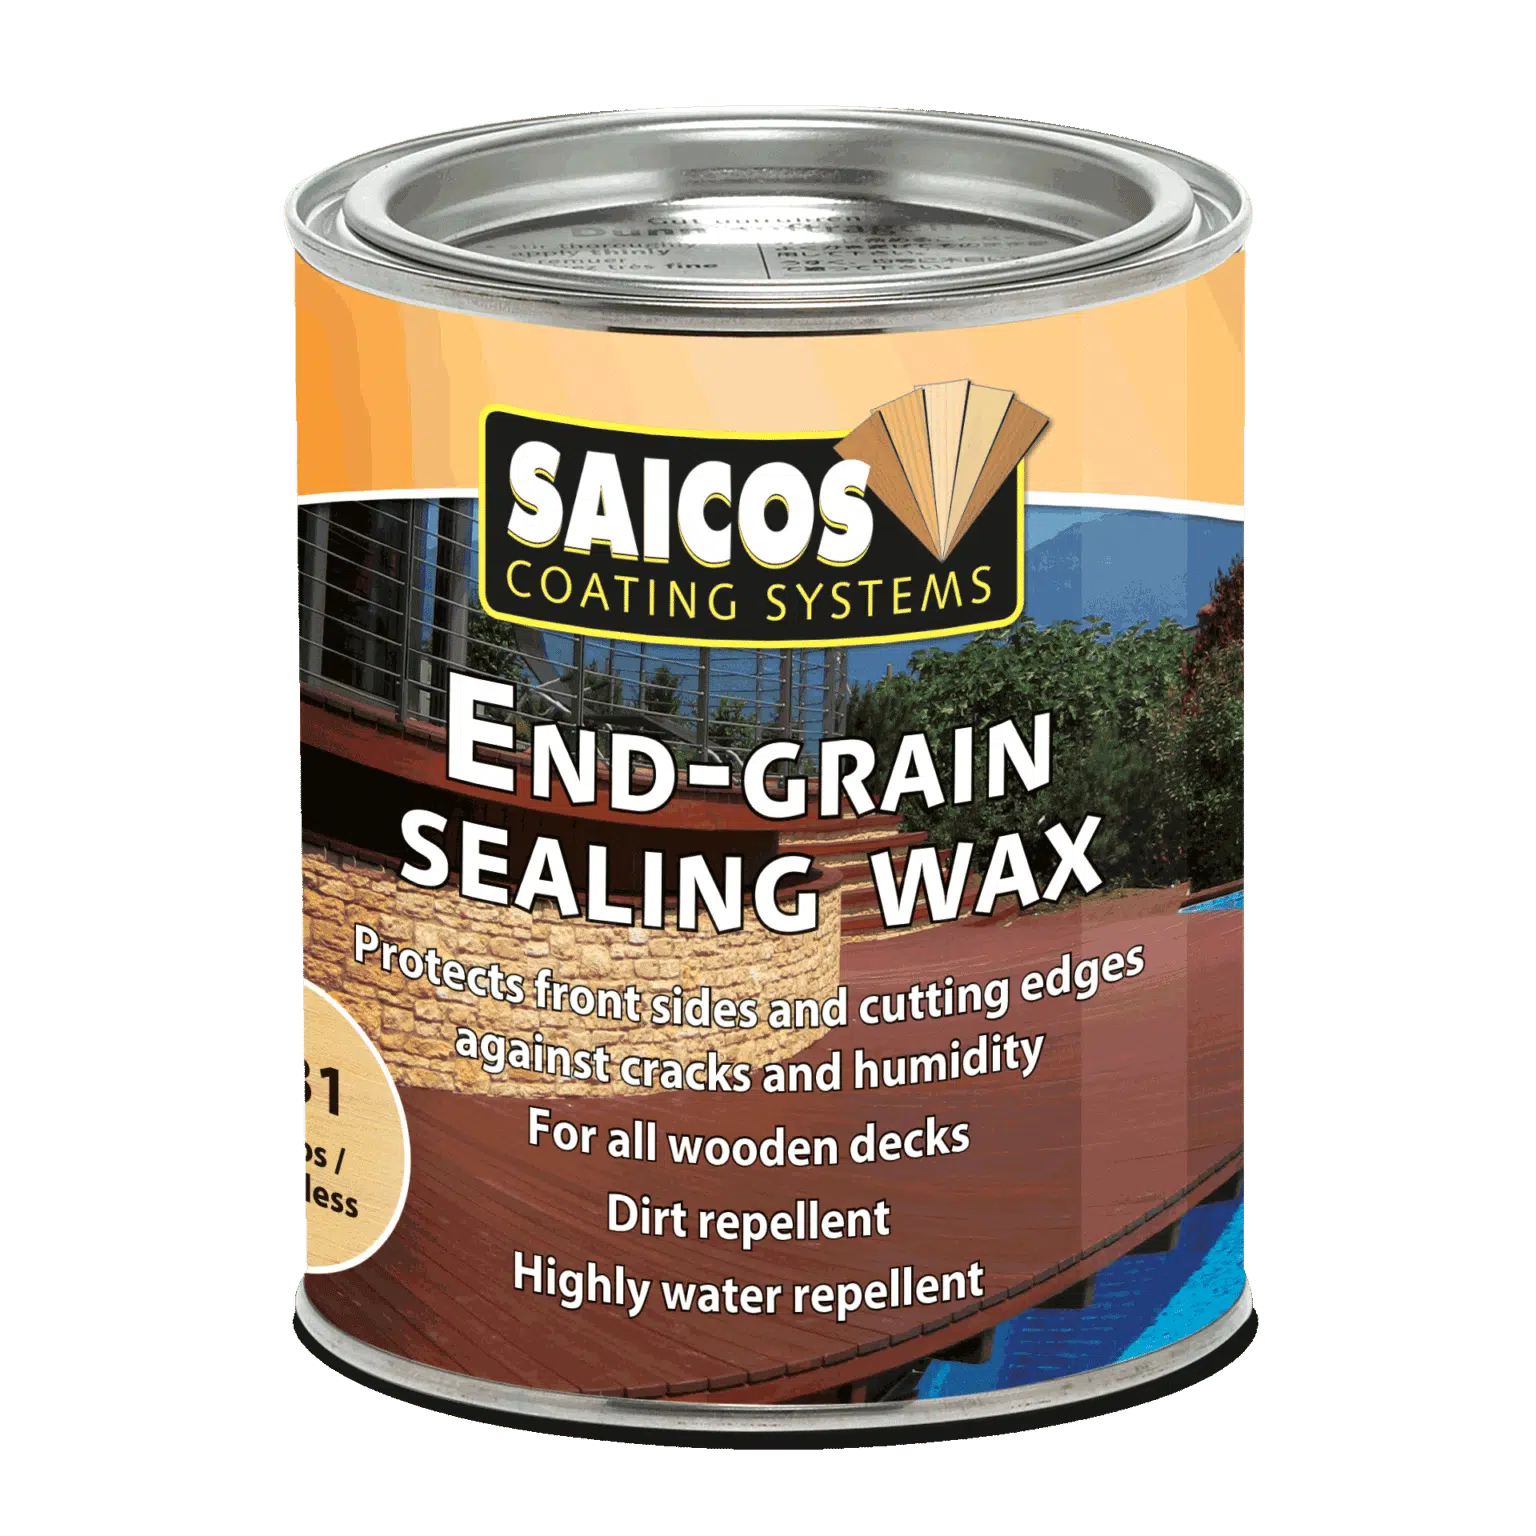 SAICOS End-Grain Sealing Wax